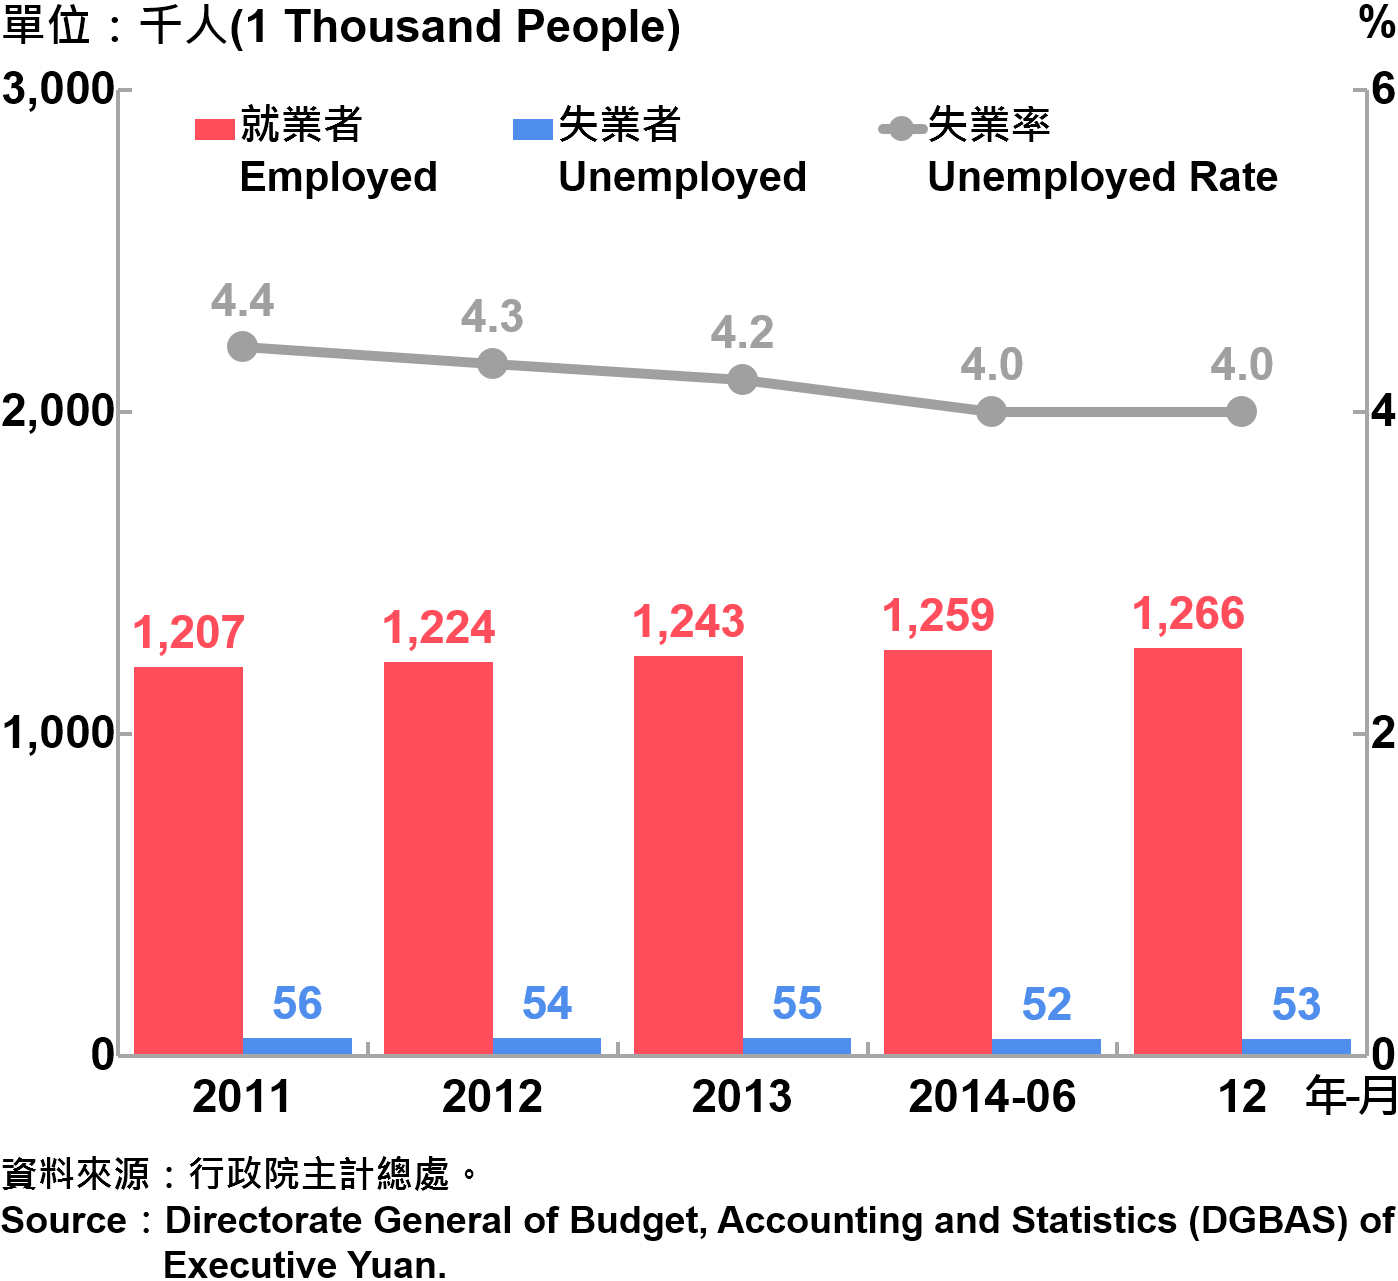 圖4 臺北市勞動力人口統計 Labor Force Statistics in Taipei